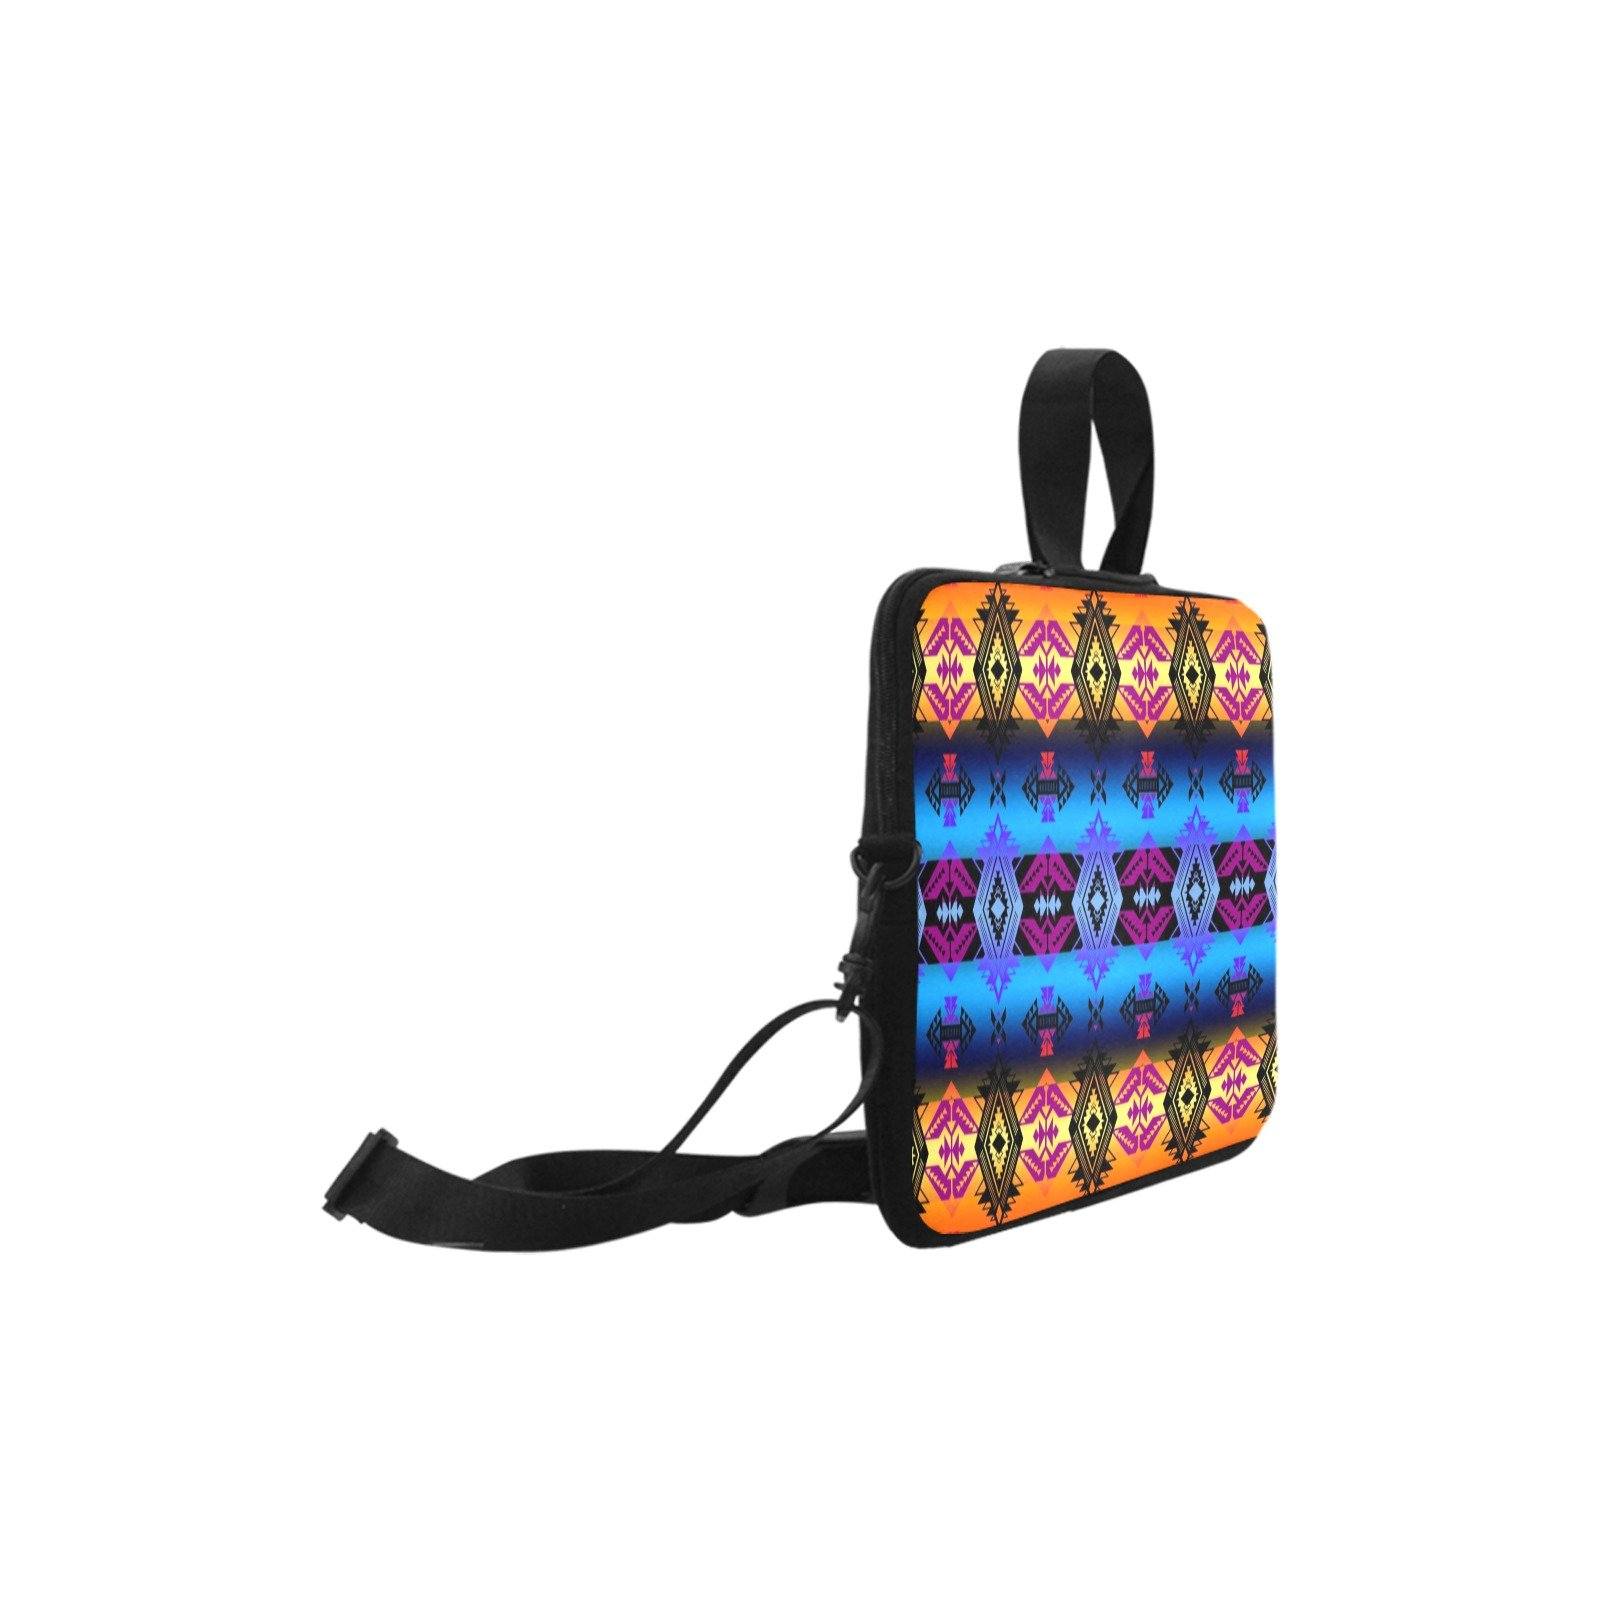 Sovereign Nation Sunset Laptop Handbags 10" bag e-joyer 